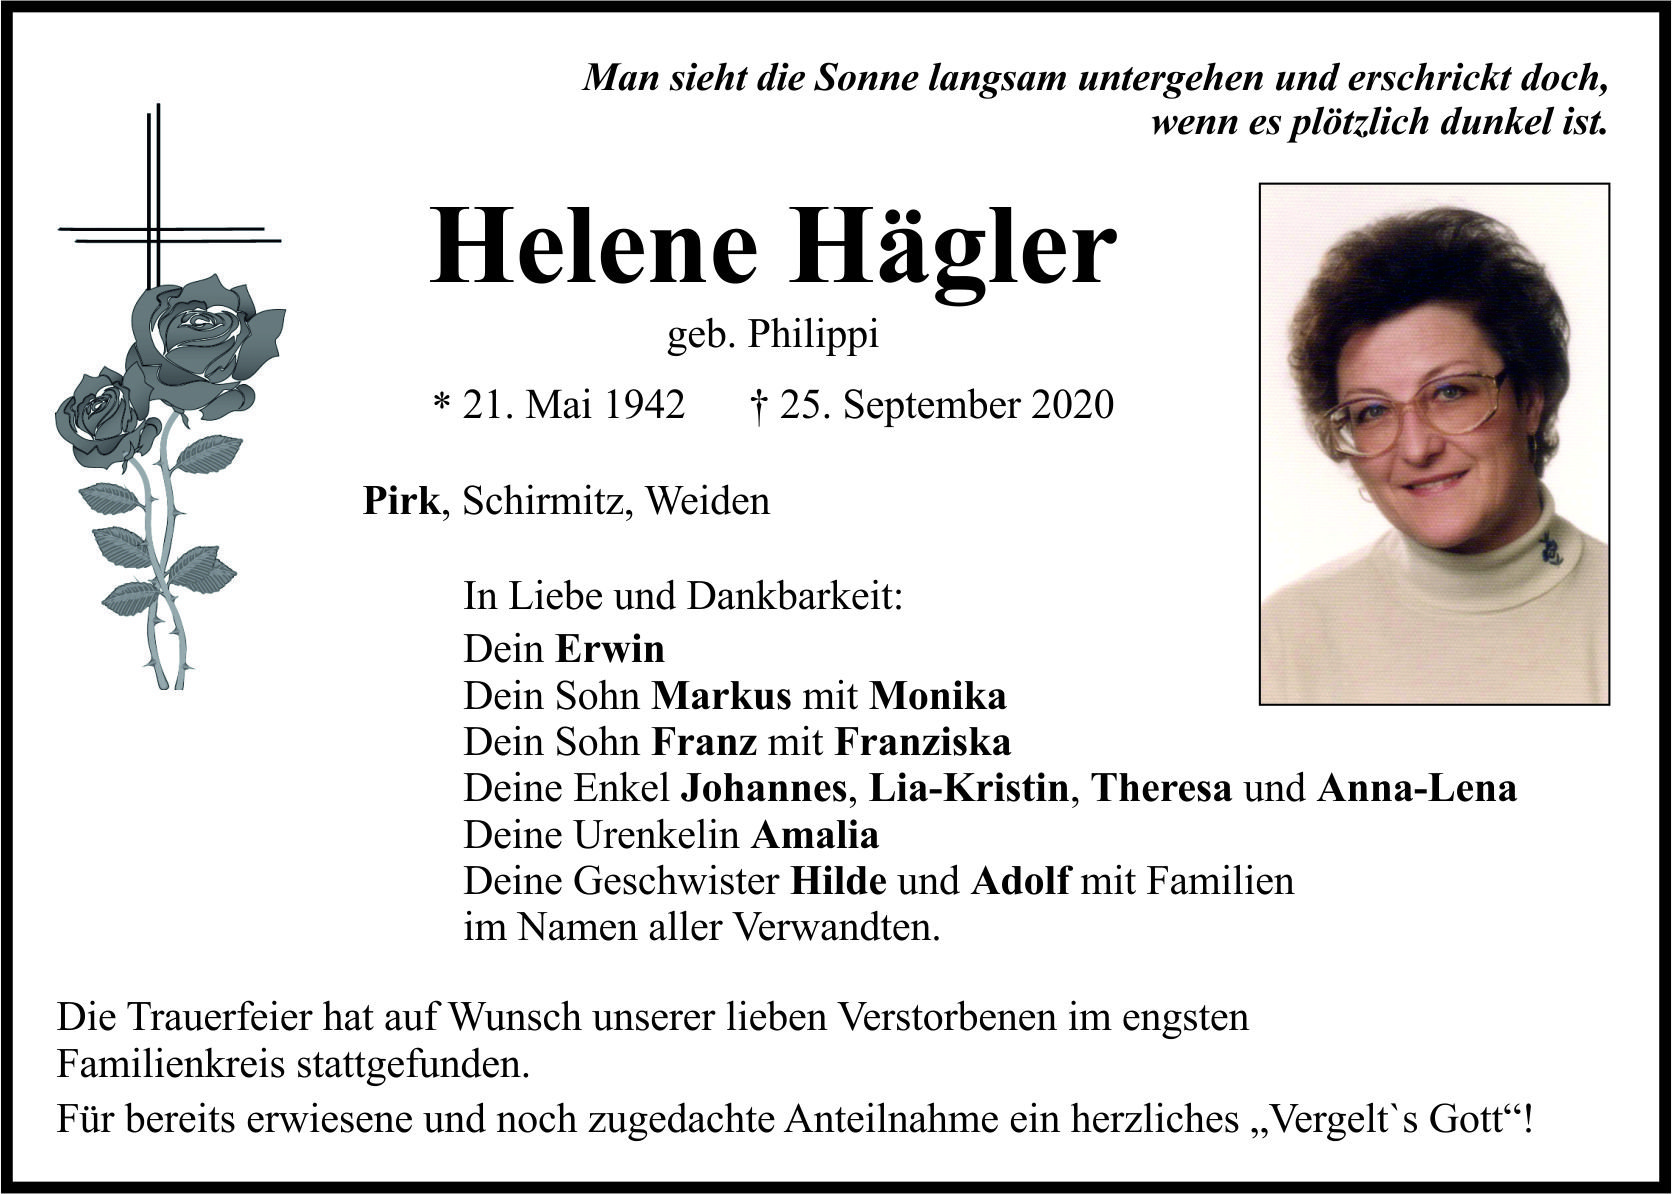 Traueranzeige Helene Hägler, Pirk